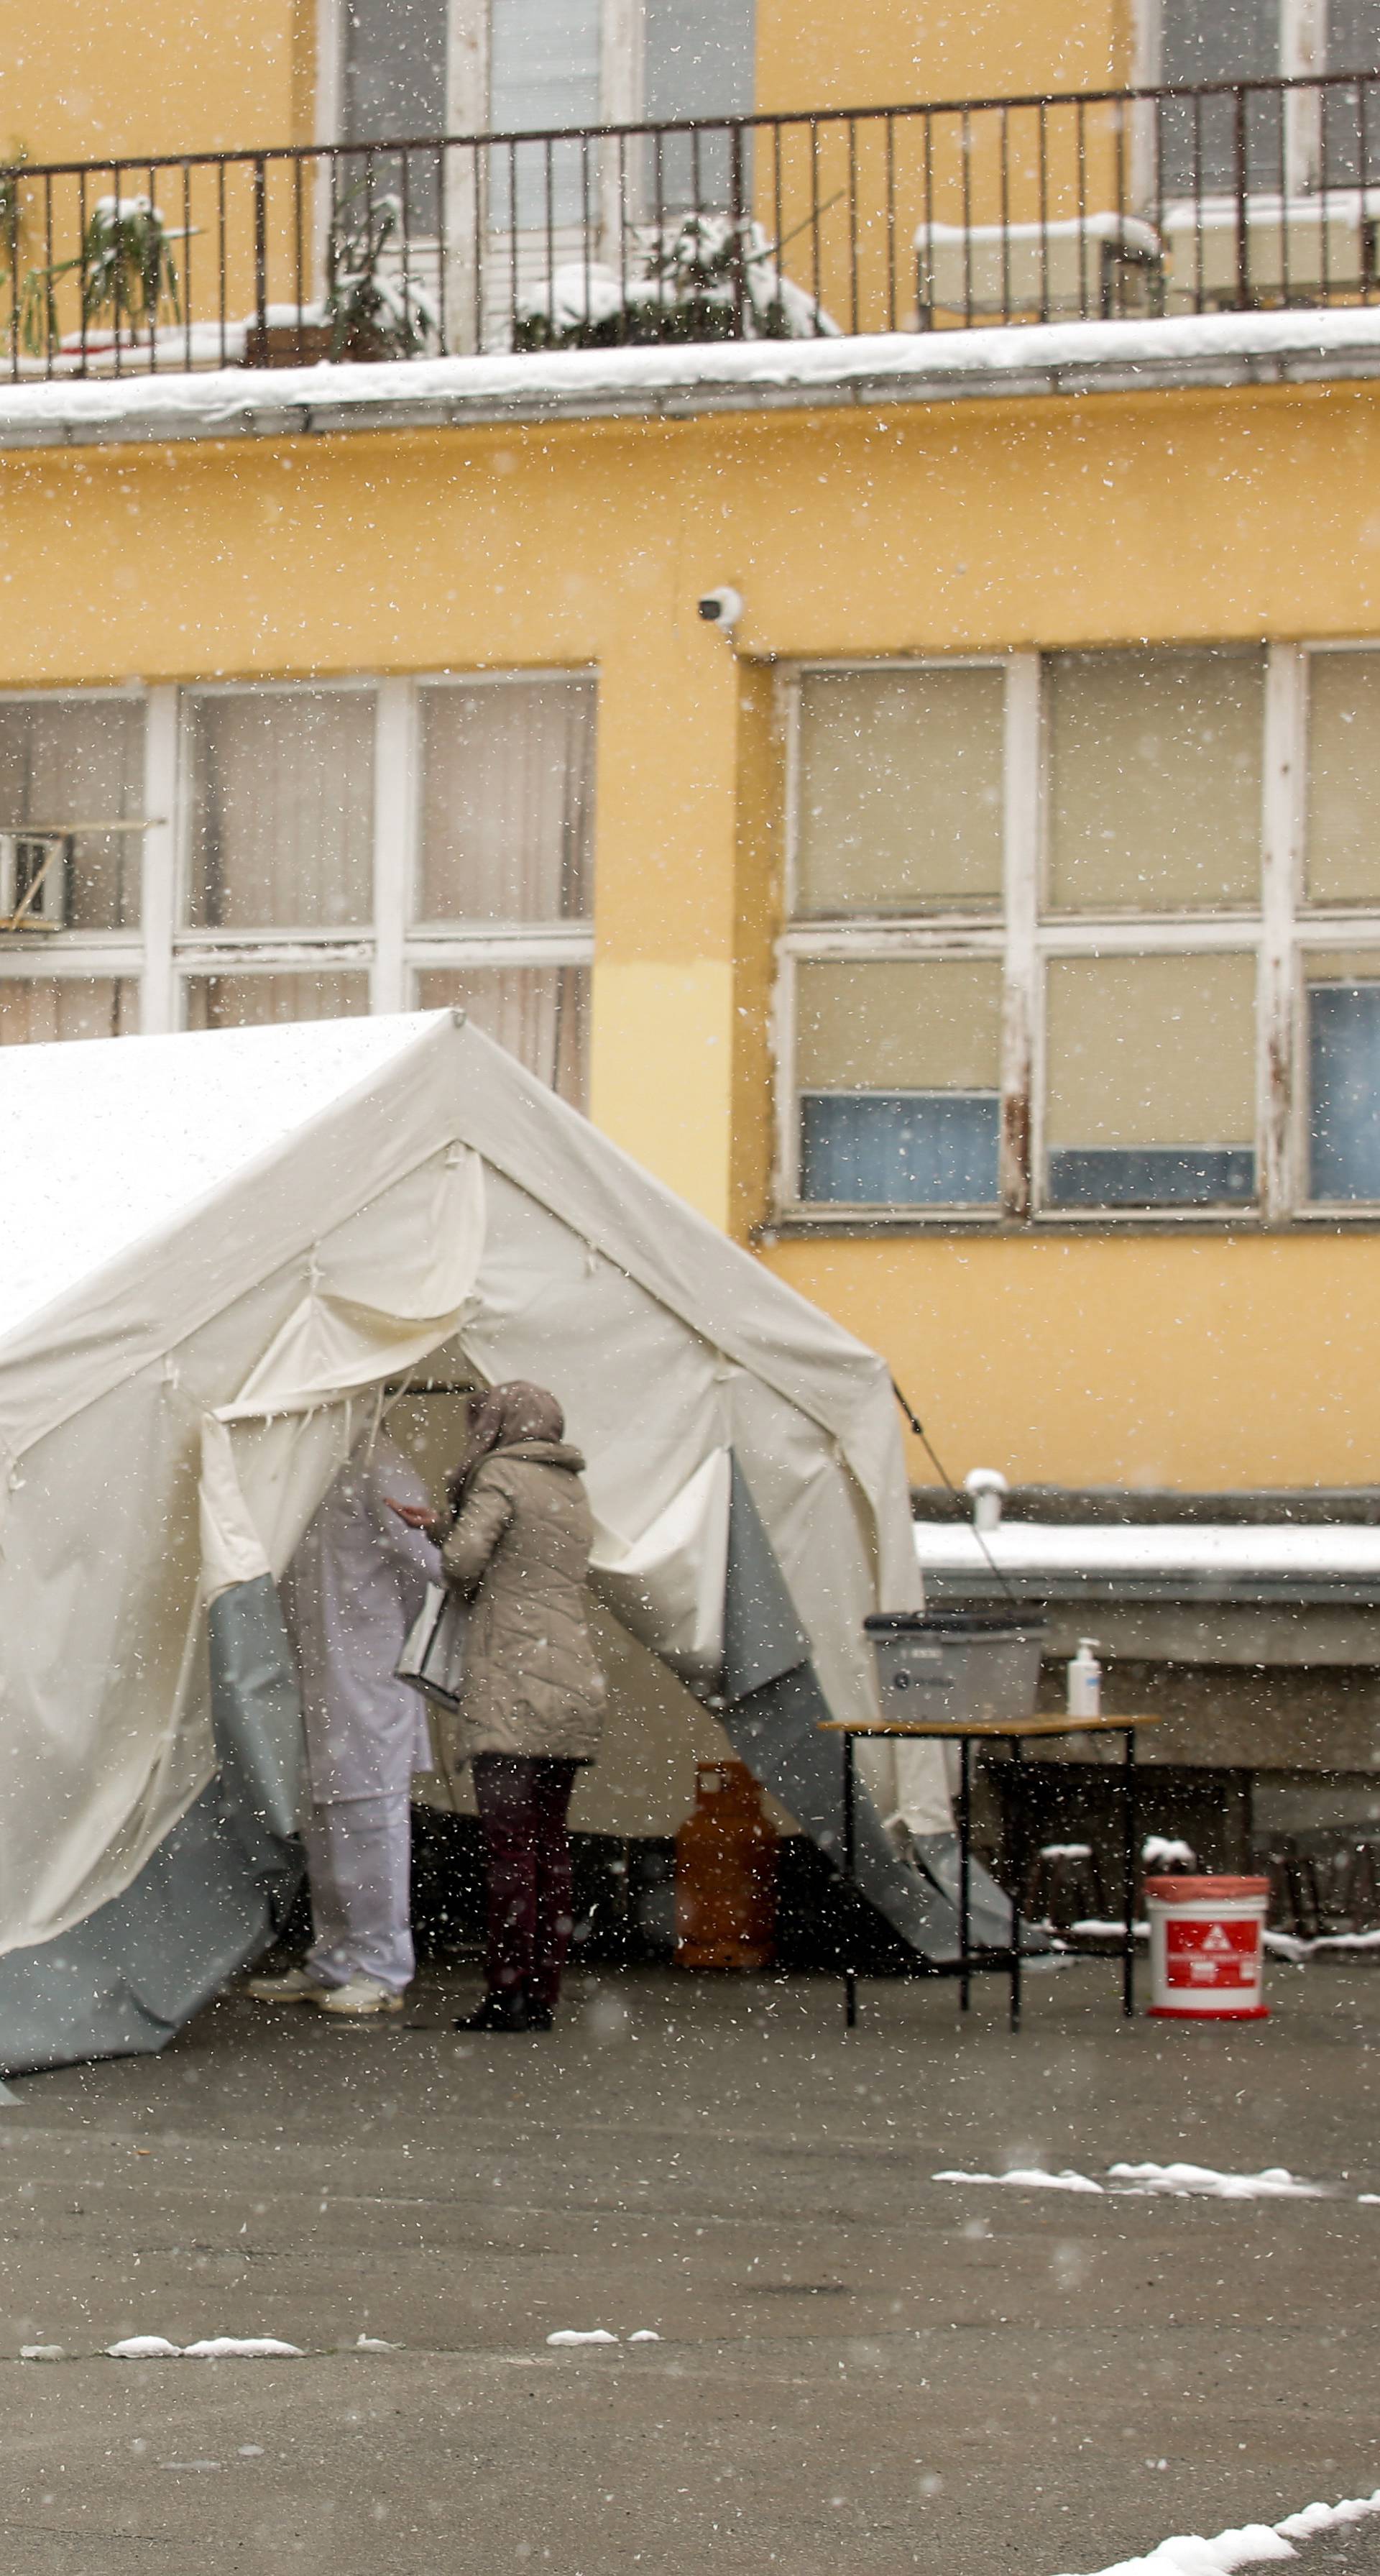 Osijek: Pred Domom zdravlja postavljen šator s ambulantom za COVID-19